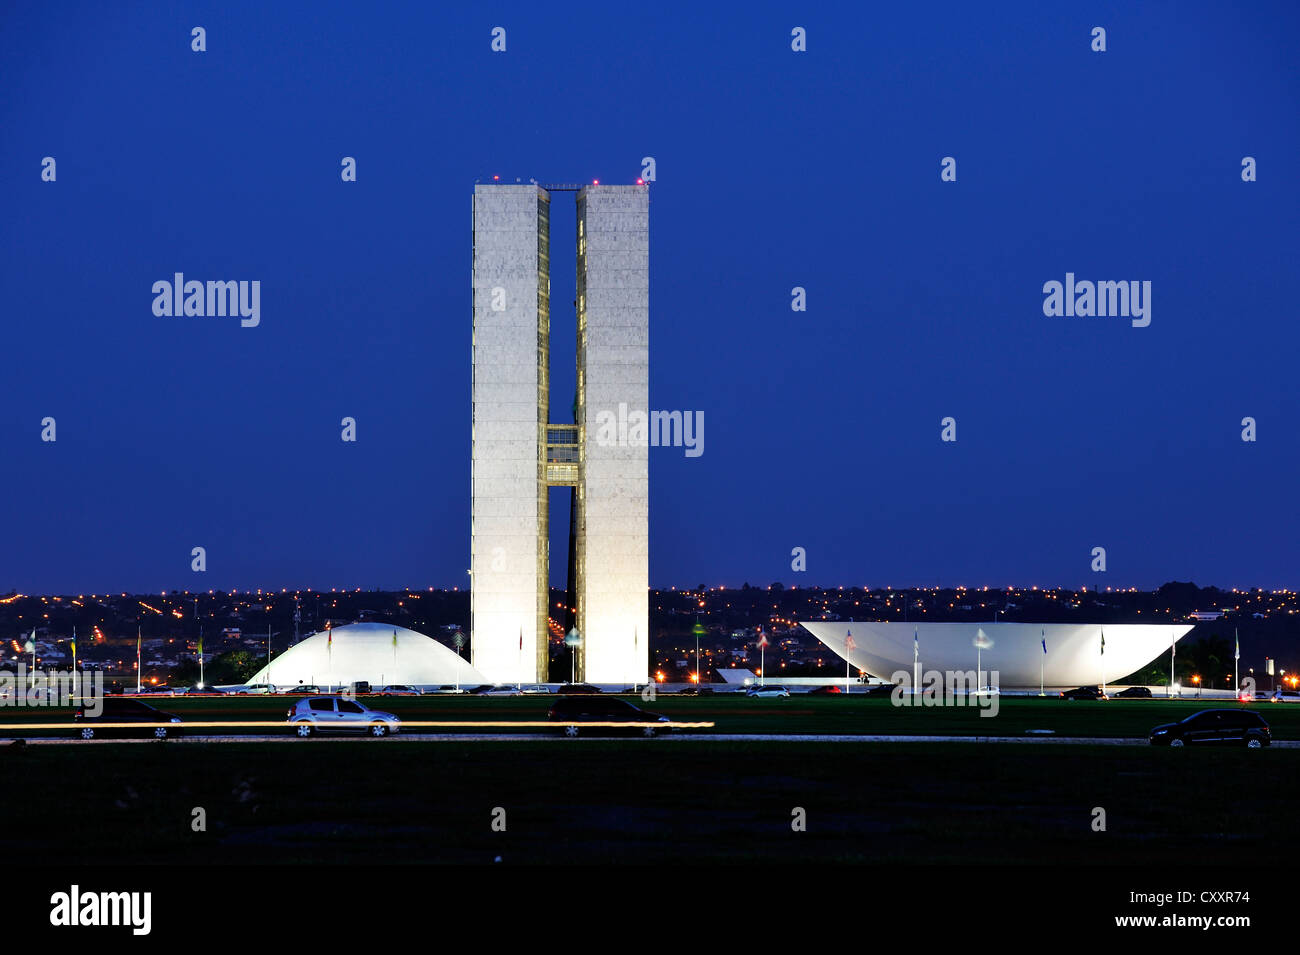 Palazzo dei Congressi, Congresso Nacional di notte, architetto Oscar Niemeyer, Brasilia, Distrito Federale DF, Brasile, Sud America Foto Stock